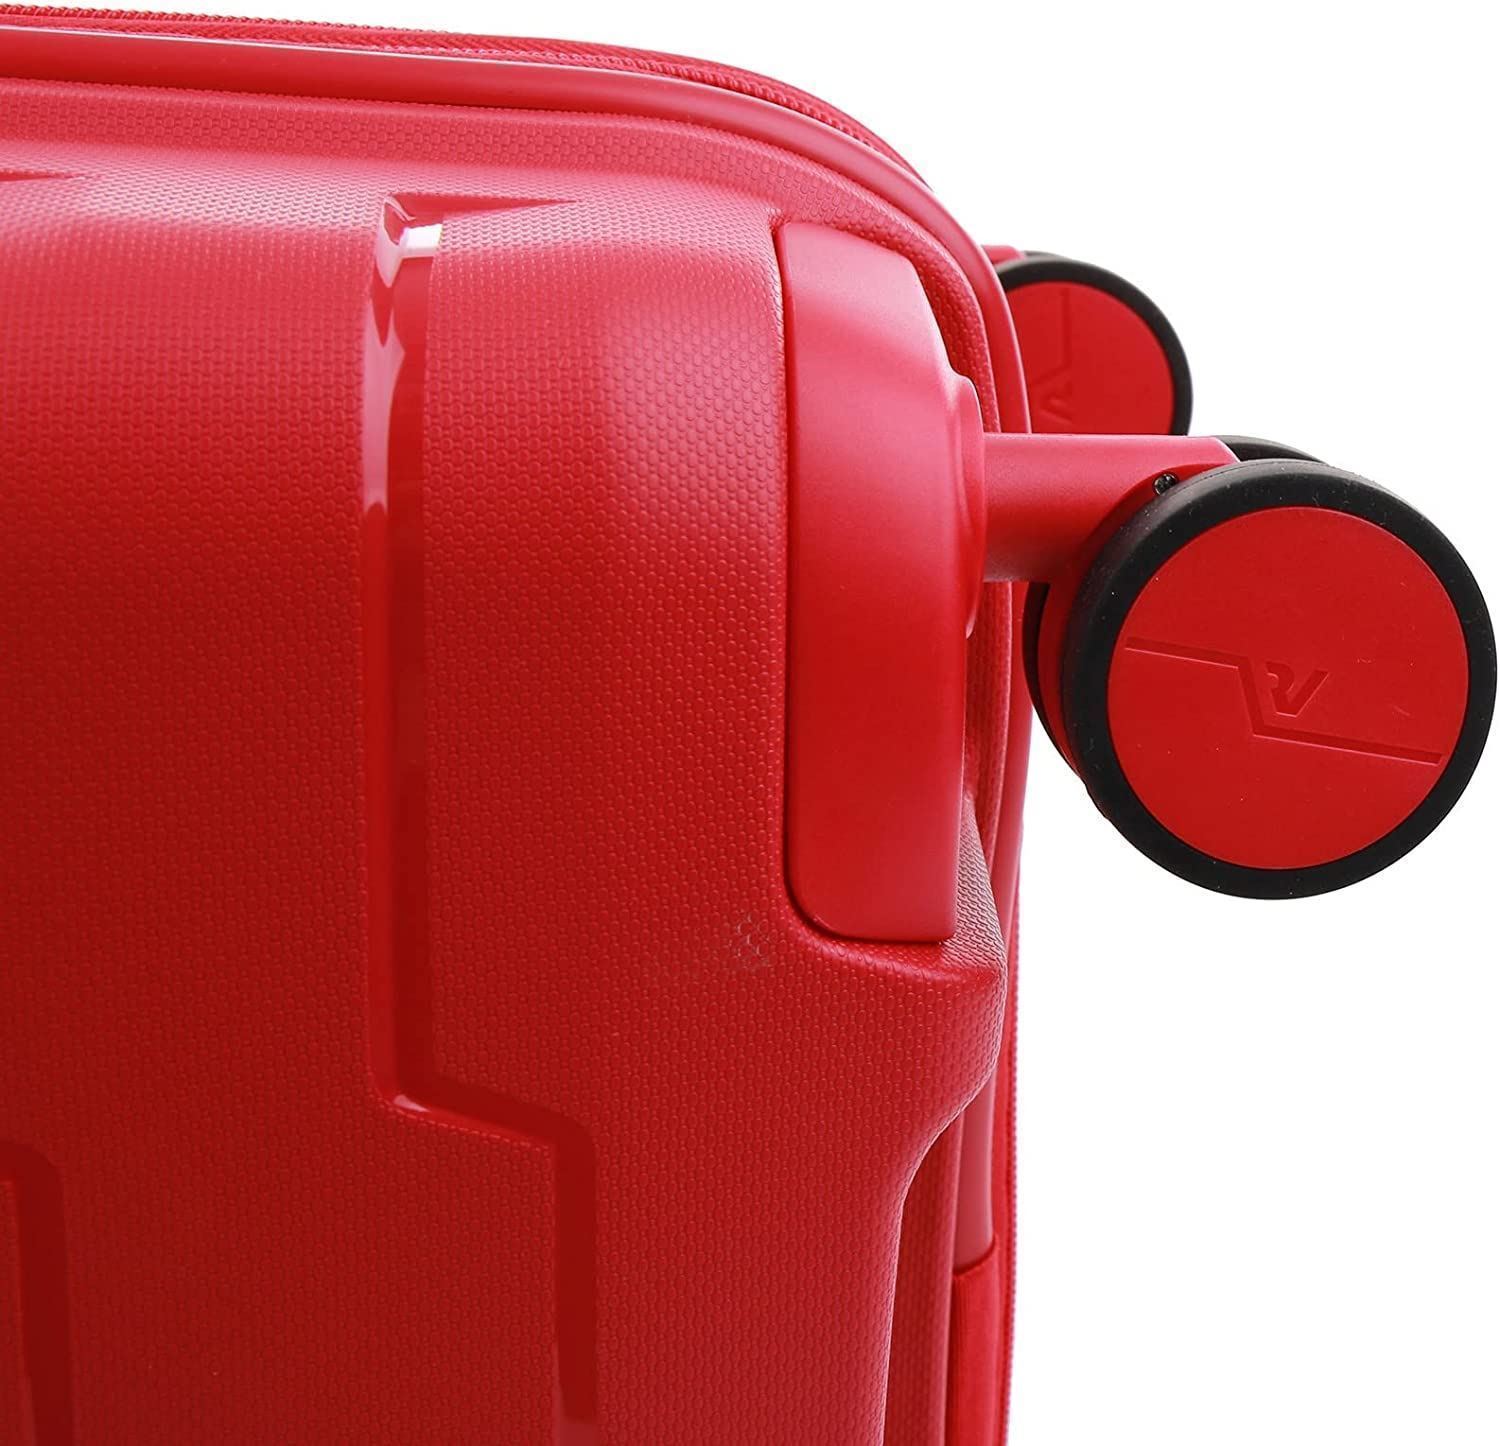 Roncato Maleta Cabina Rigida Skyline Expandible color Rojo USB Garantia 5 años - Imagen 7